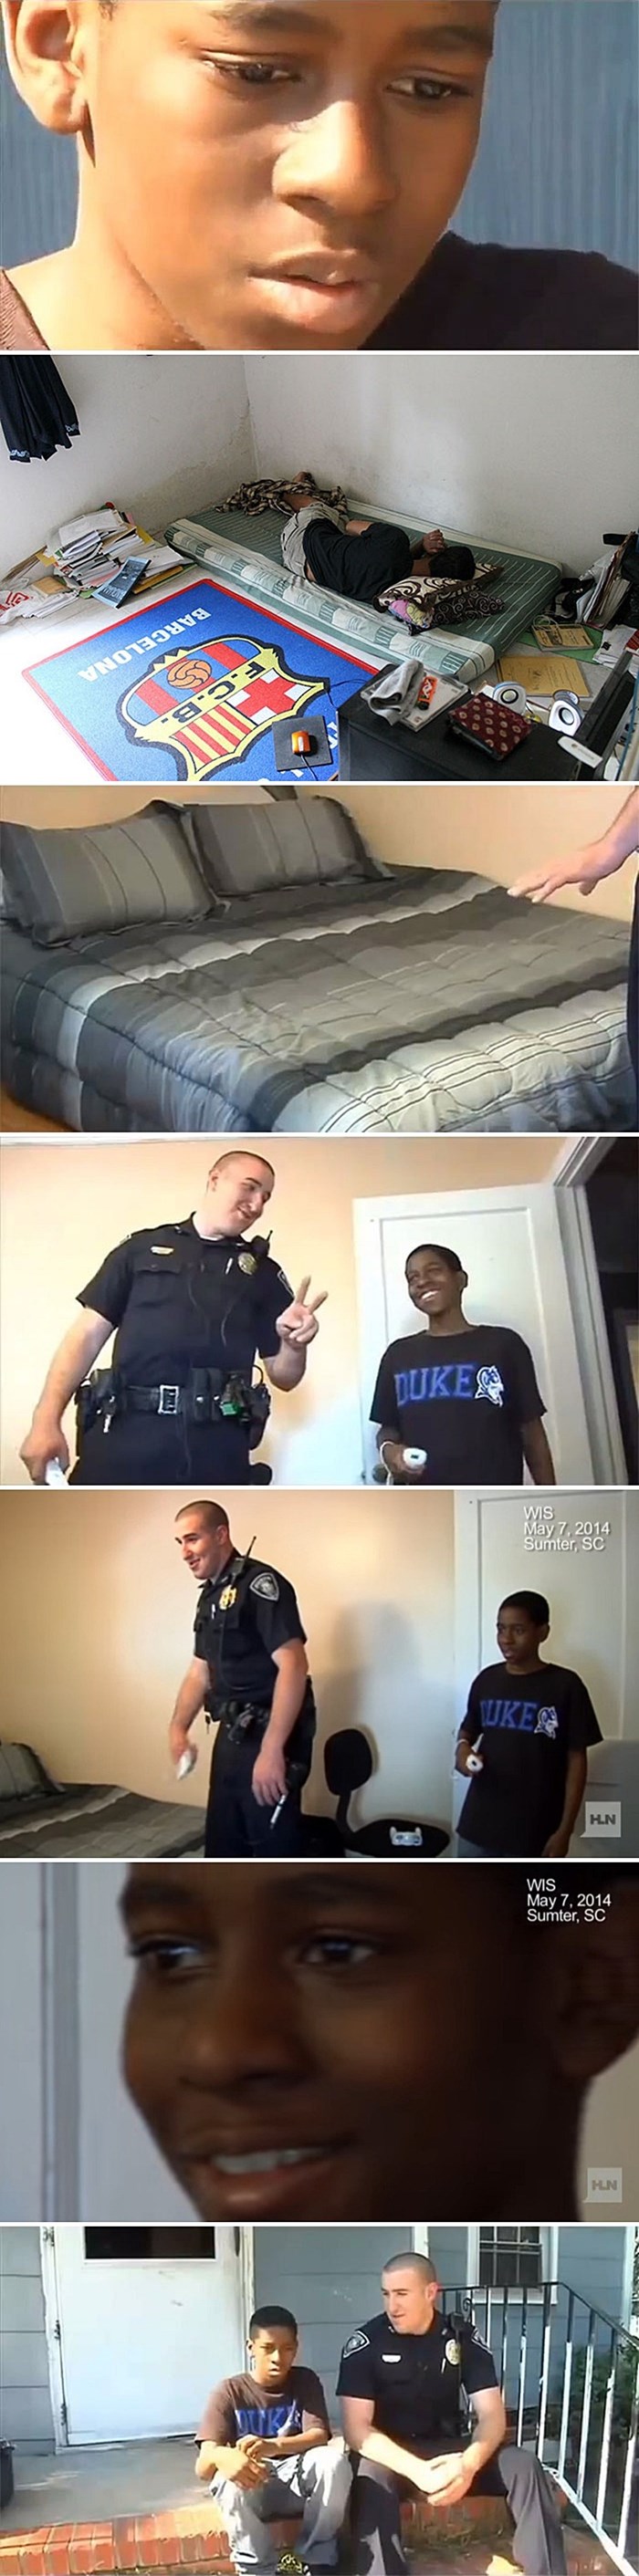 Dječak je htio pobjeći od kuće, a kada je policajac ušao u njegovu sobu, bilo mu je sve jasno